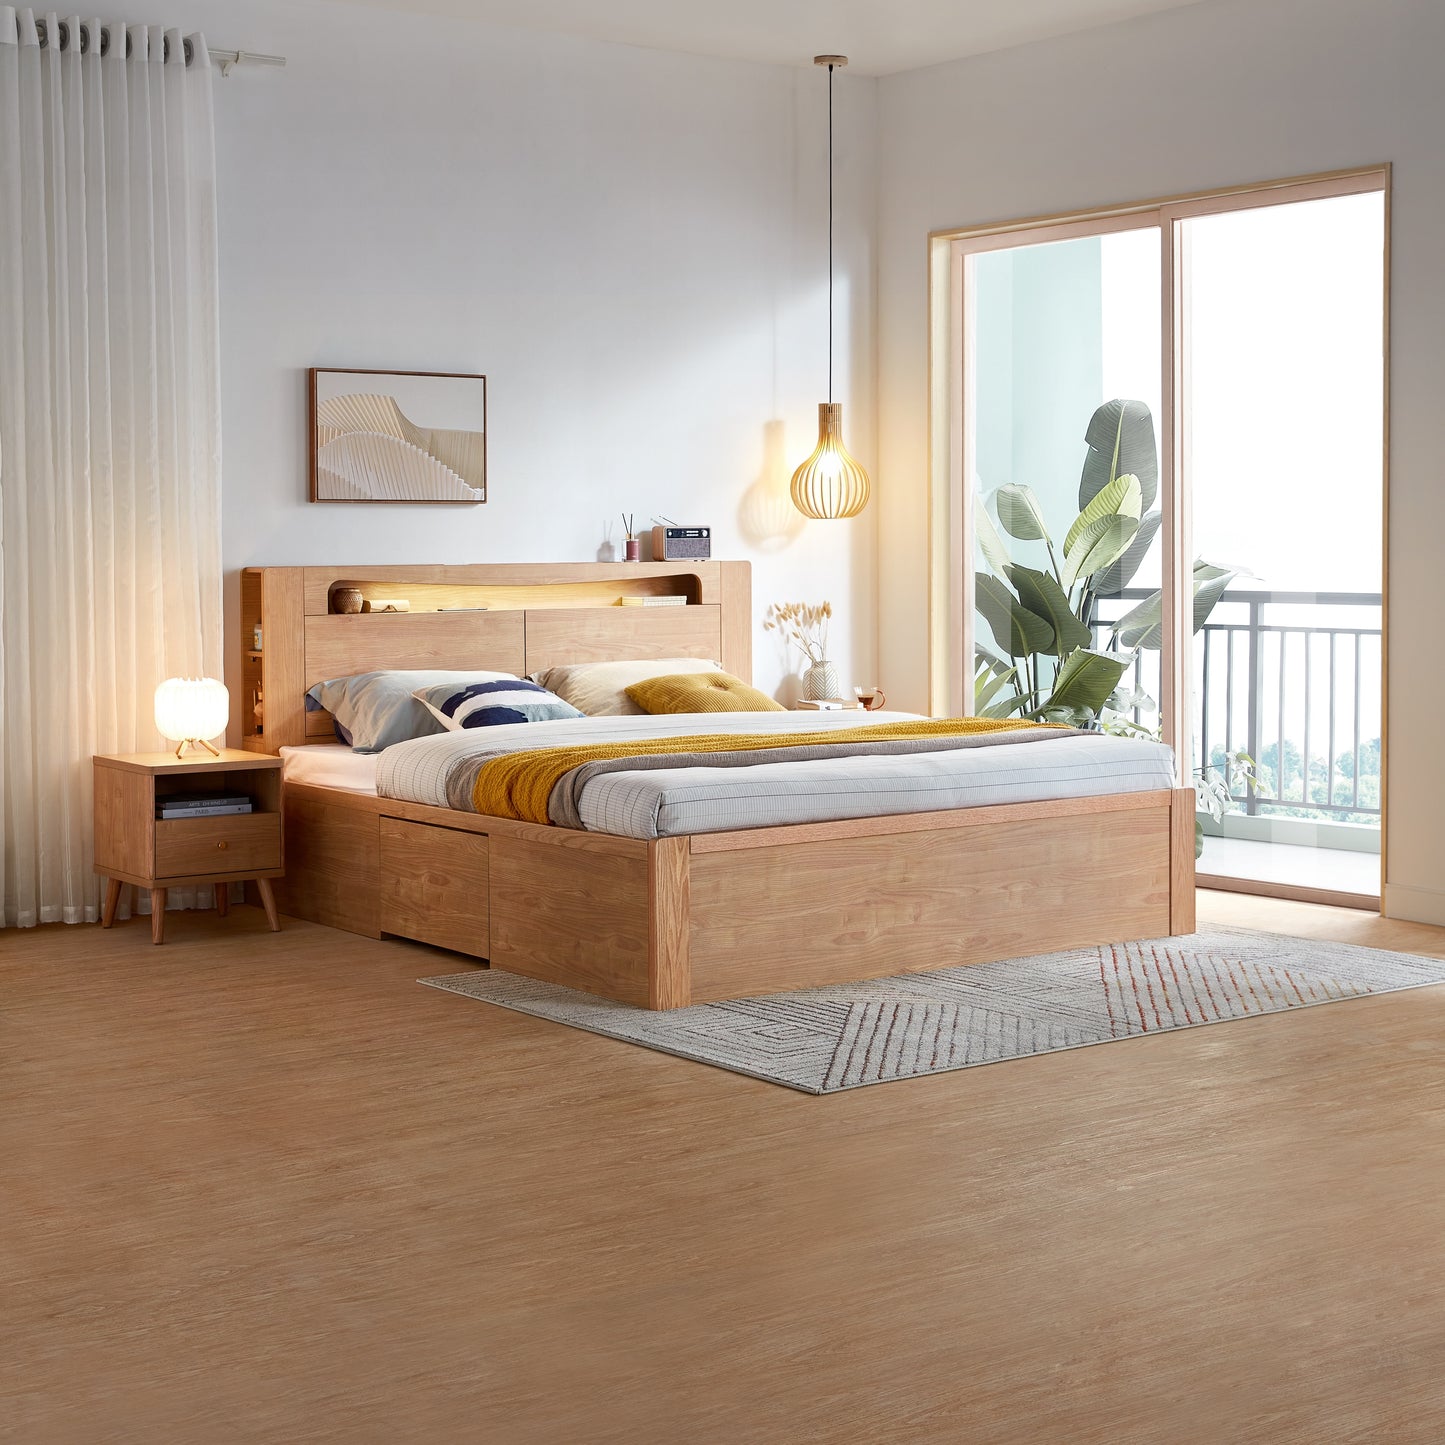 Wooden Bed Base- Bedroom